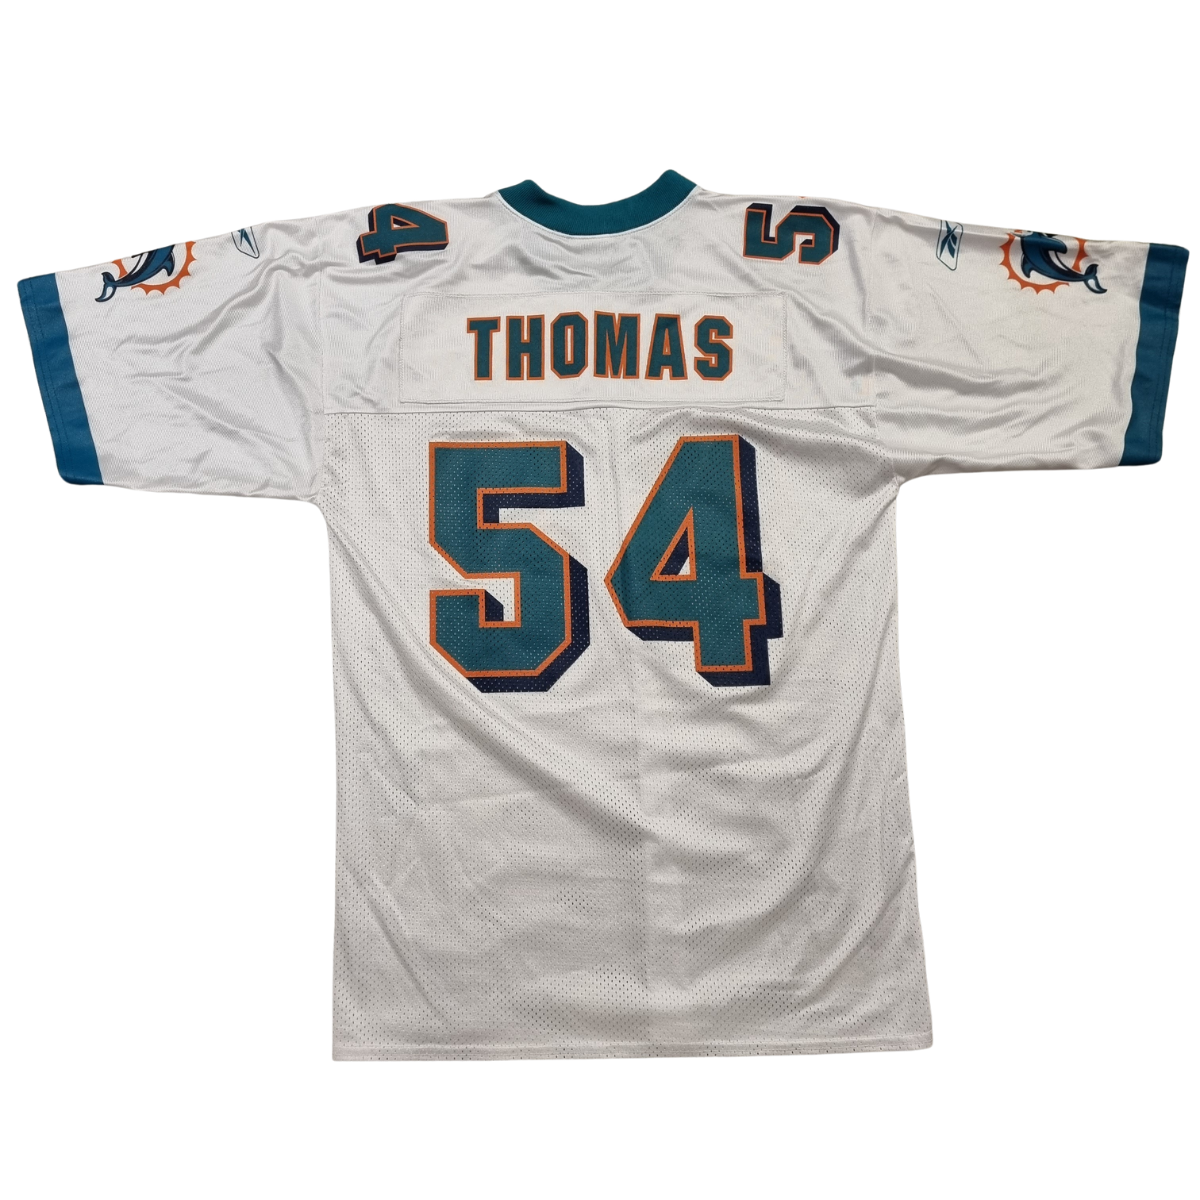 Jersey NFL Reebok, Miami Dolphins Zac Thomas 54